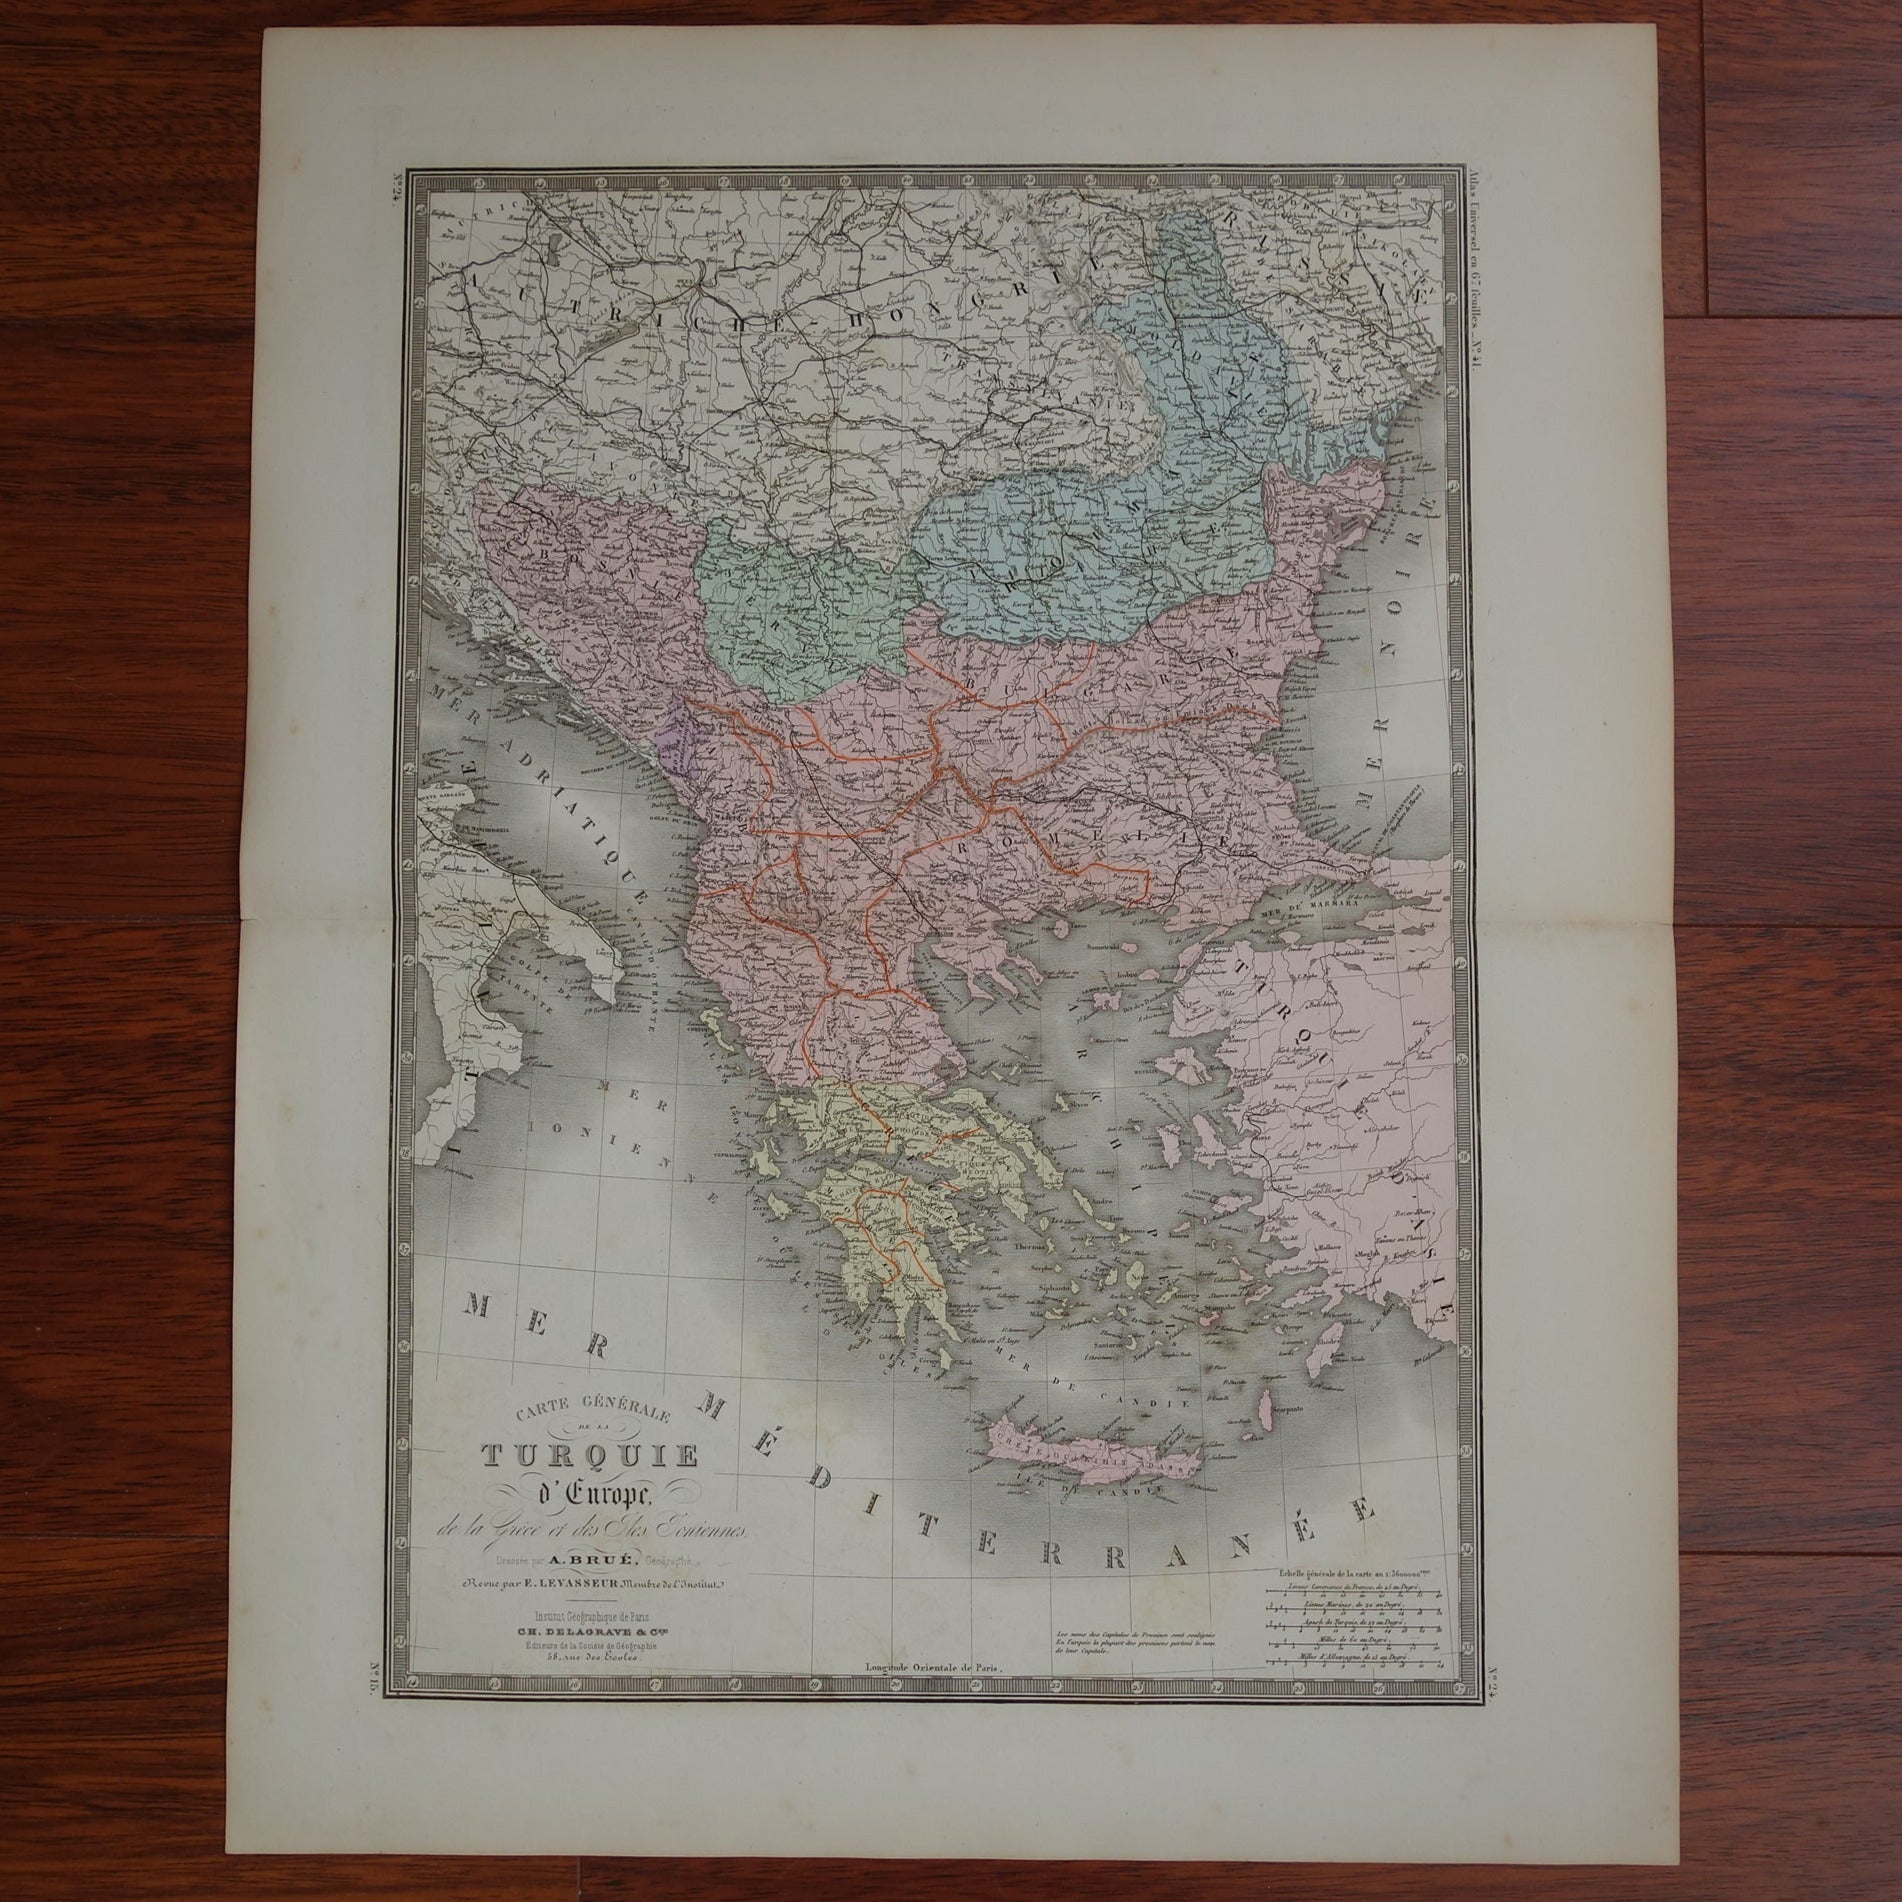 Turkse rijk in 1876 kaart landkaart kopen